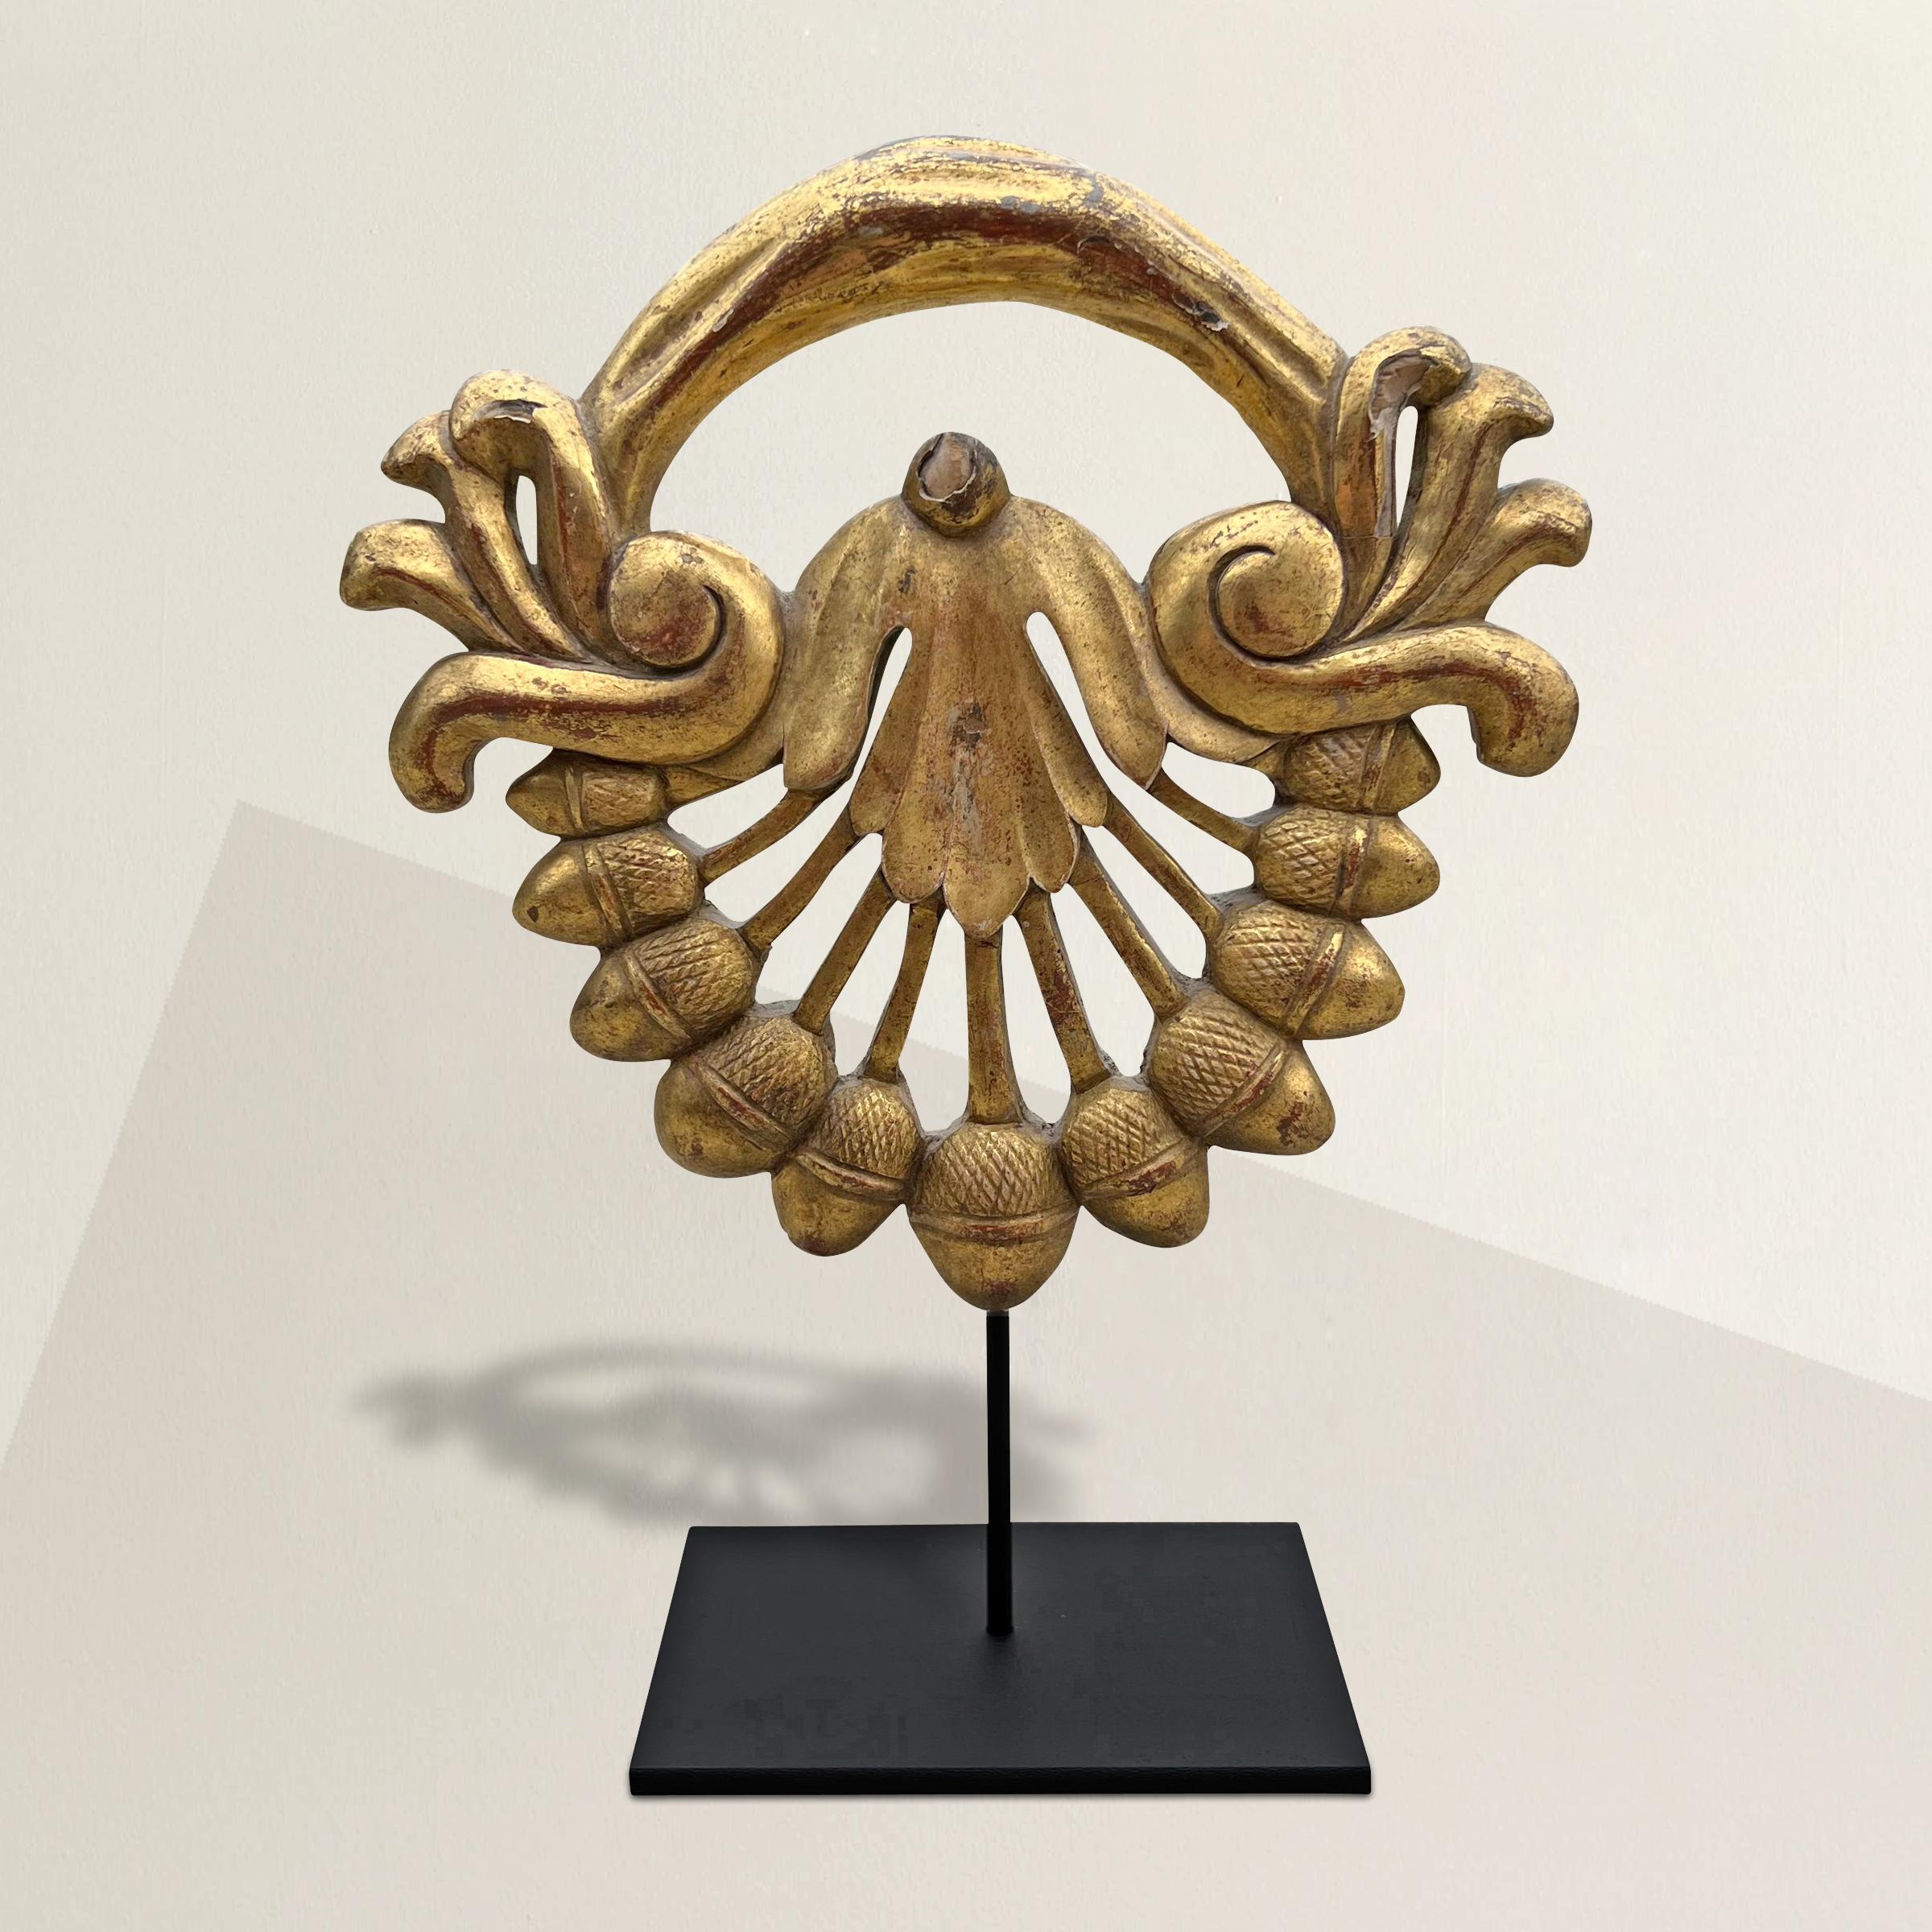 Ein skurriles, handgeschnitztes und vergoldetes französisches Kartuschenfragment aus dem 19. Jahrhundert mit Eicheln und Blattwerkdekor, montiert auf einer speziellen Stahlhalterung. Seit der römischen Antike sind Eicheln ein Symbol für Stärke,